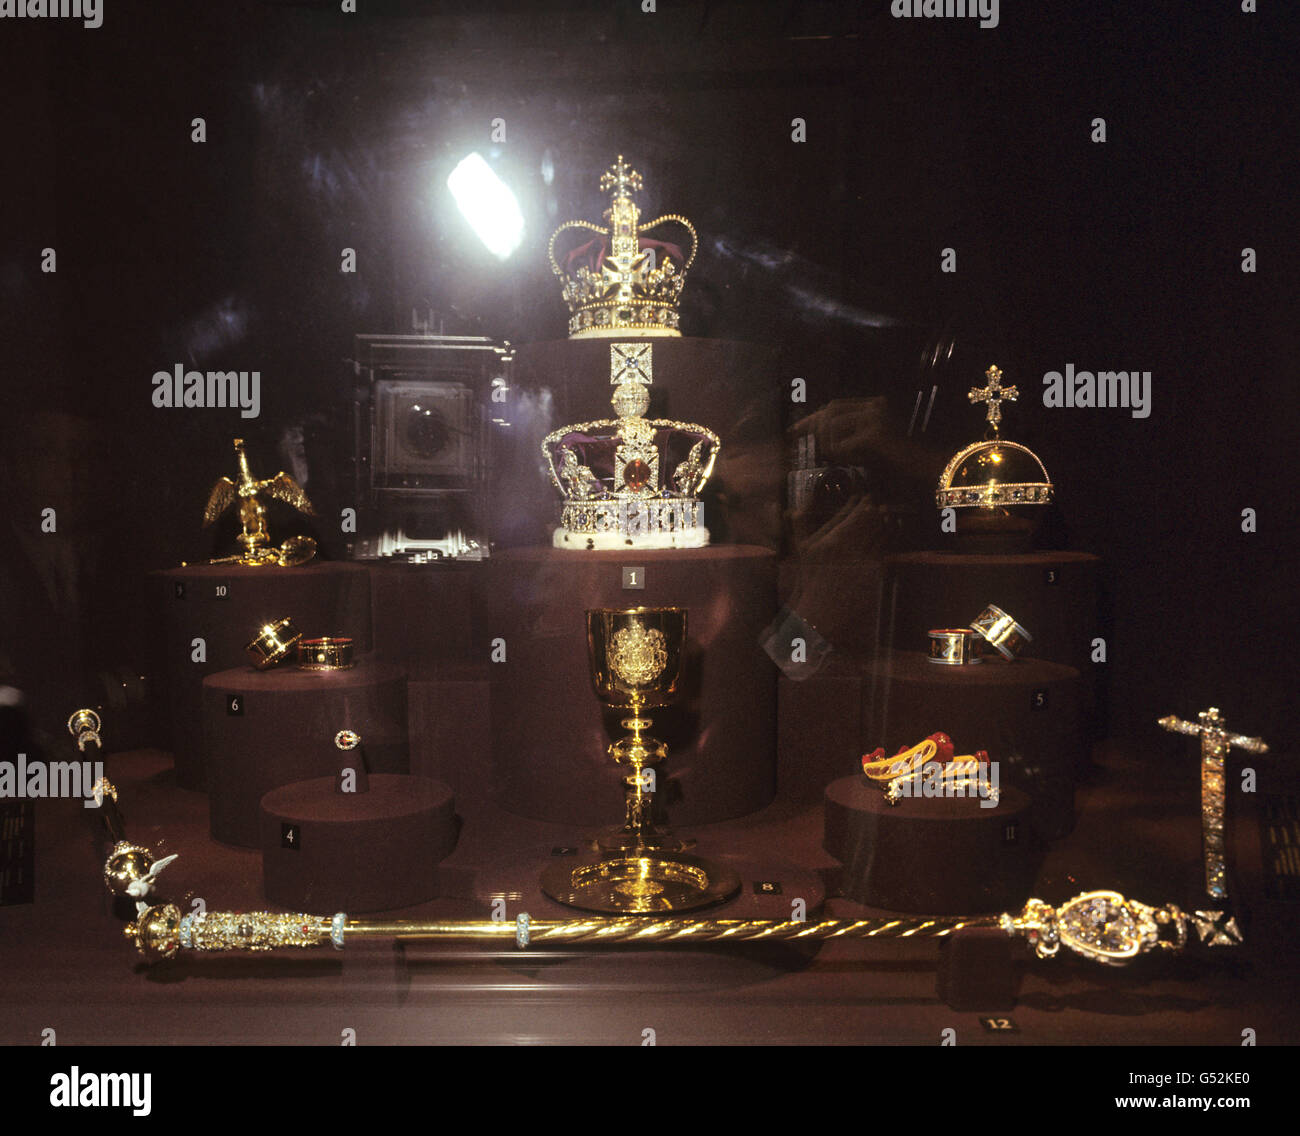 La Corona di Stato Imperiale, la Corona di Sant'Edwards, il Sovrano Orbo, gli Spuri d'Oro, i Bracciali e la Parola di Stato di Jewel sono esposti alla nuova Crown Jewel Imperial House alla Torre di Londra. Foto Stock